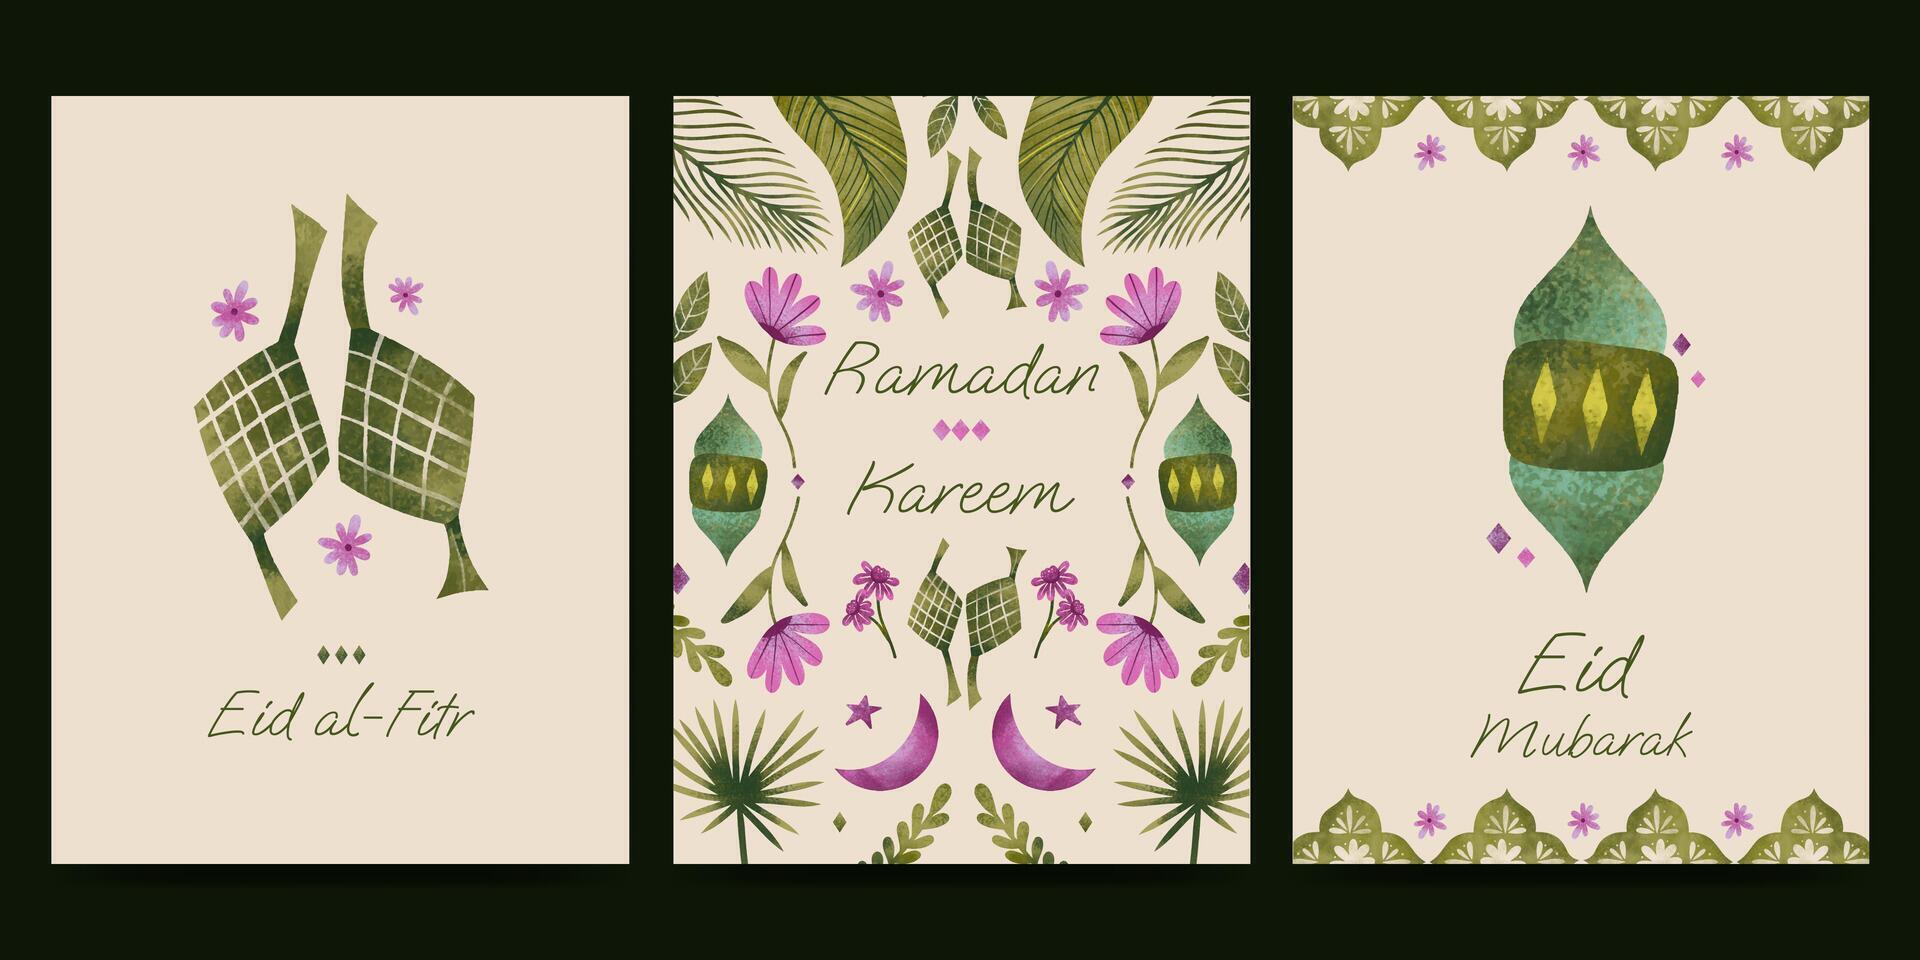 islámico saludo tarjeta con flor y planta ilustración para Ramadán eid Mubarak islámico día. vector